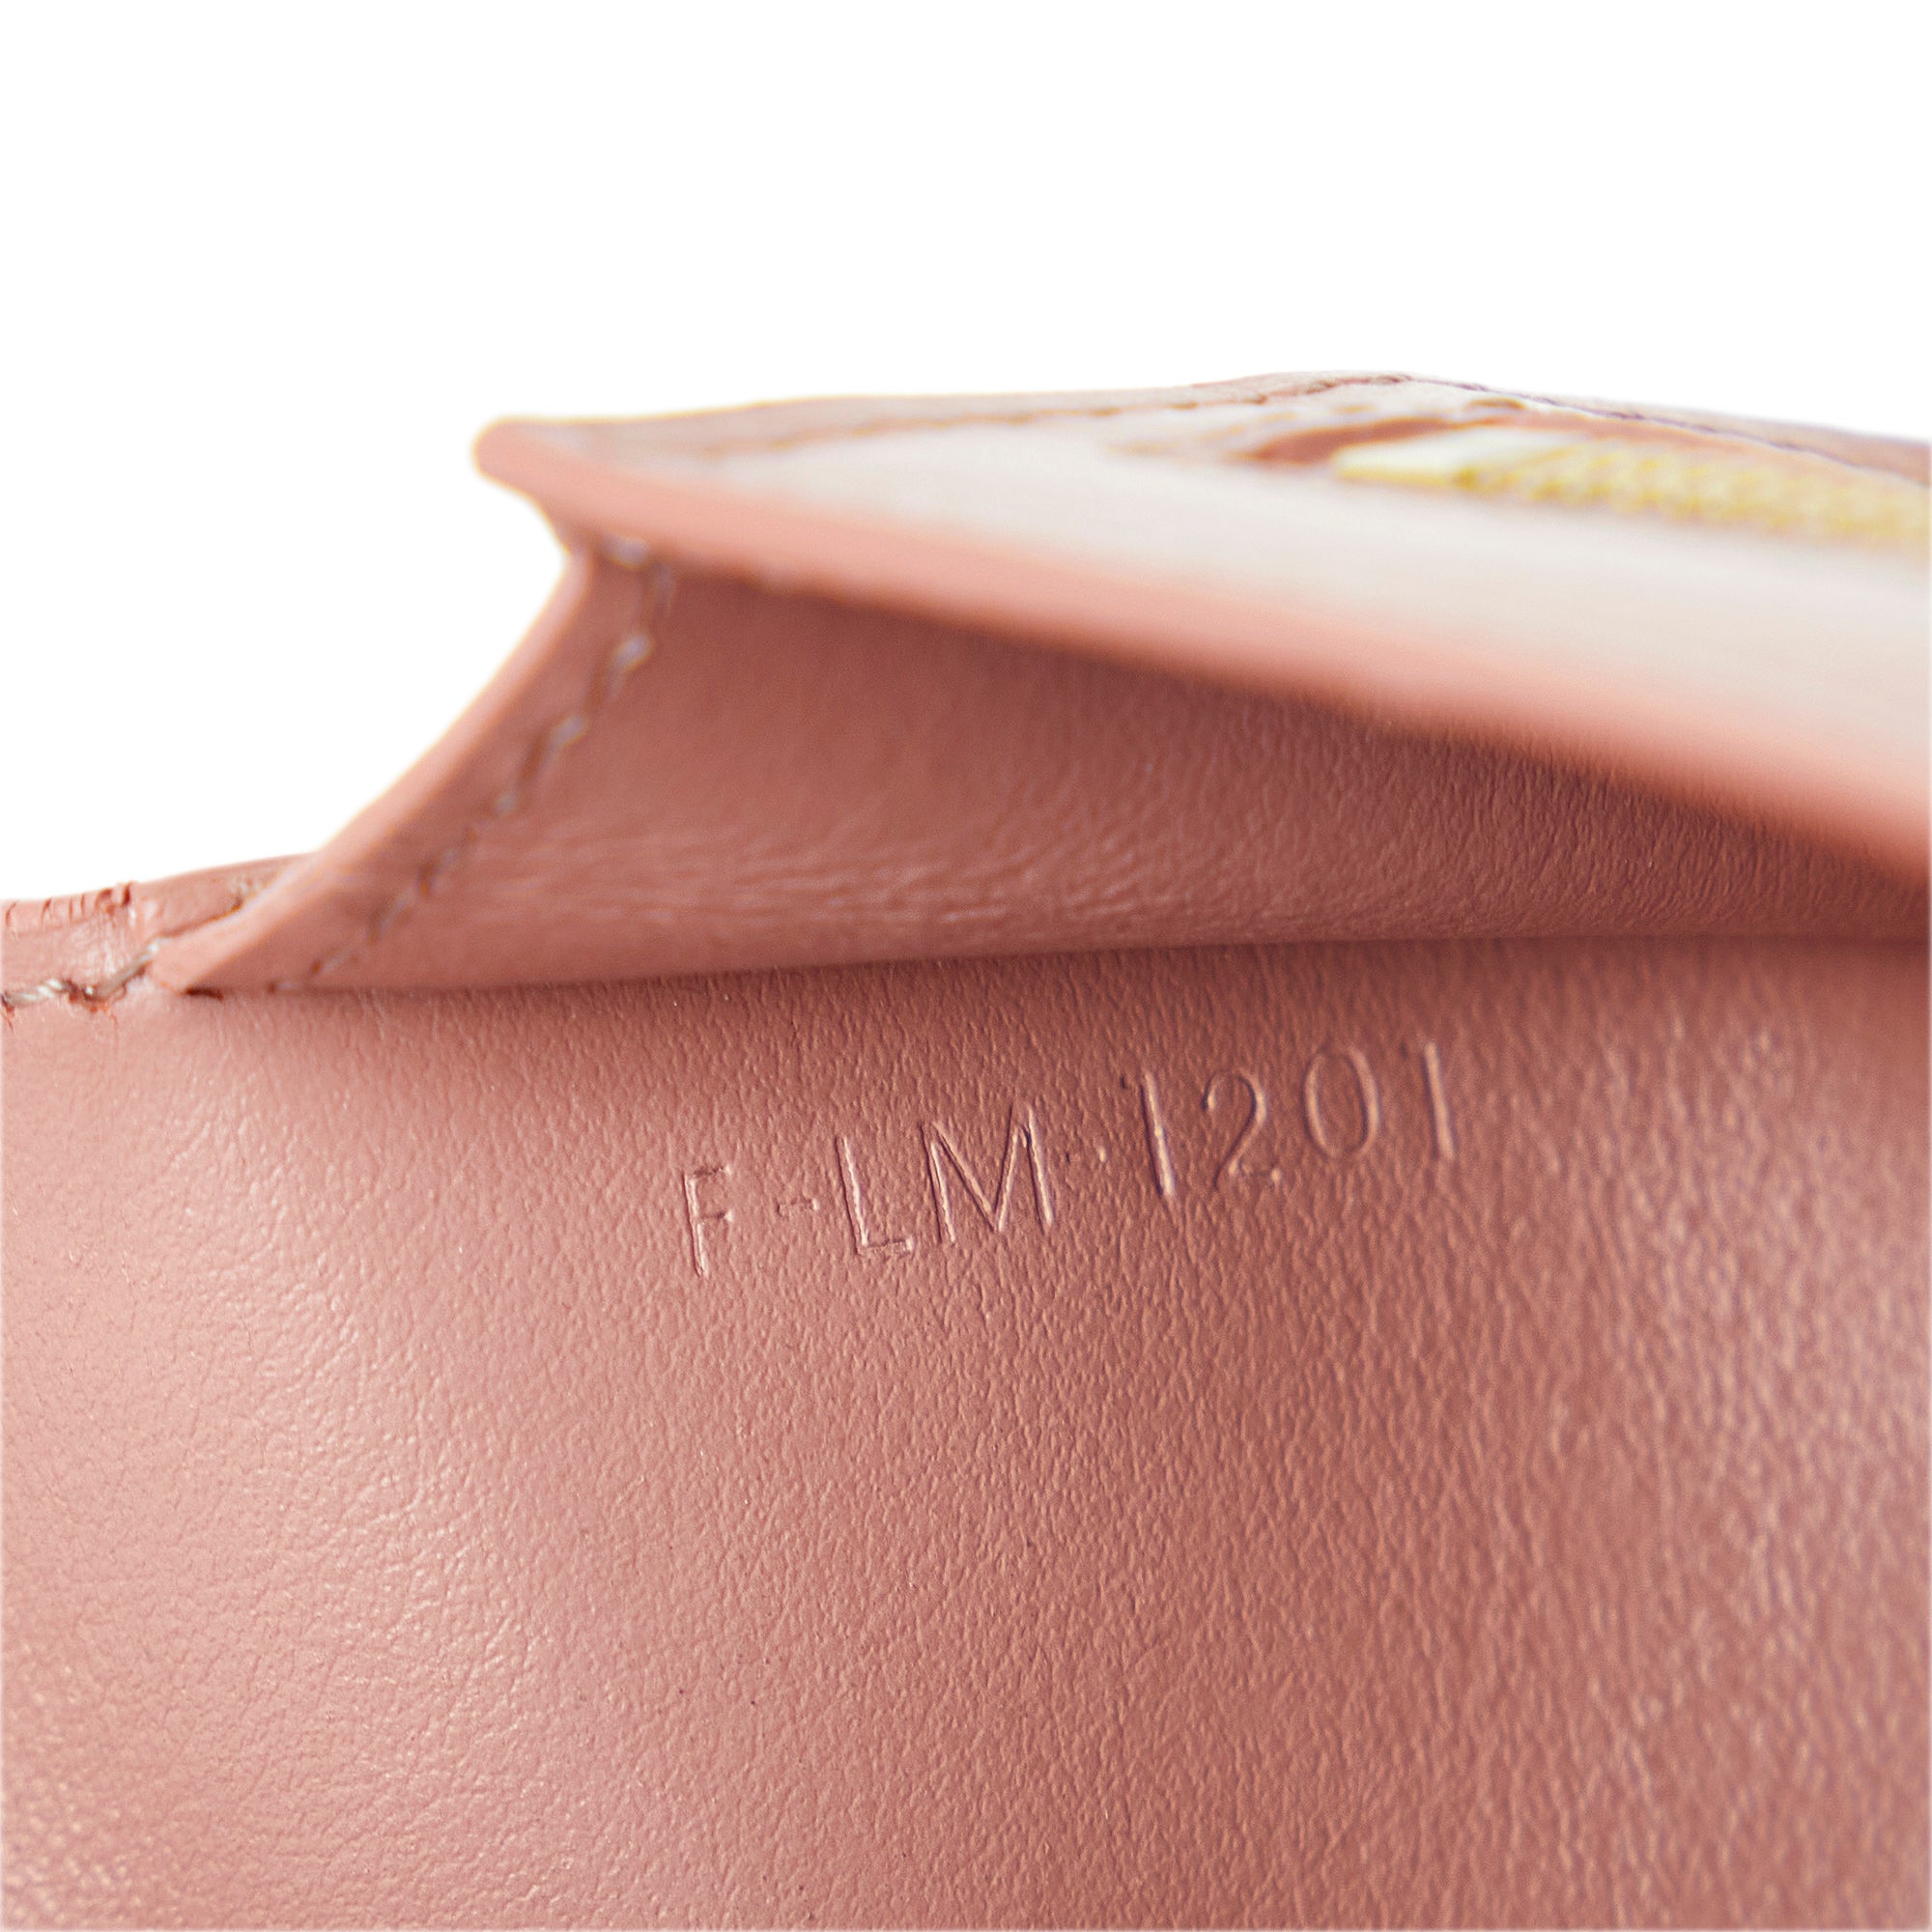 Celine Women's Multifunction Strap Leather Wallet